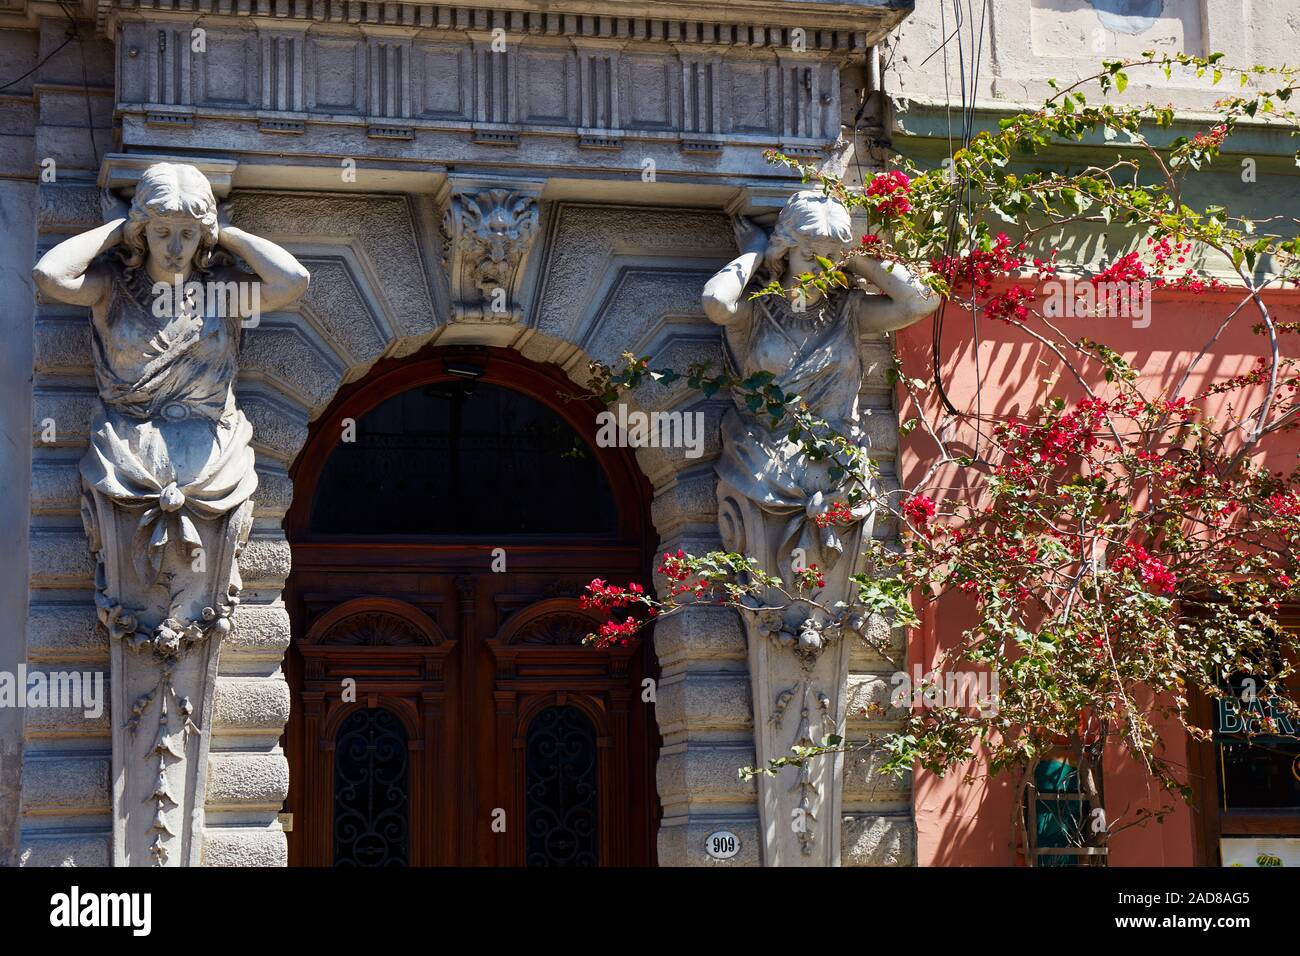 Zwei karyatiden am Eingang eines kolonialen Gebäude im Stadtteil San Telmo, Buenos Aires, Argentinien. Stockfoto